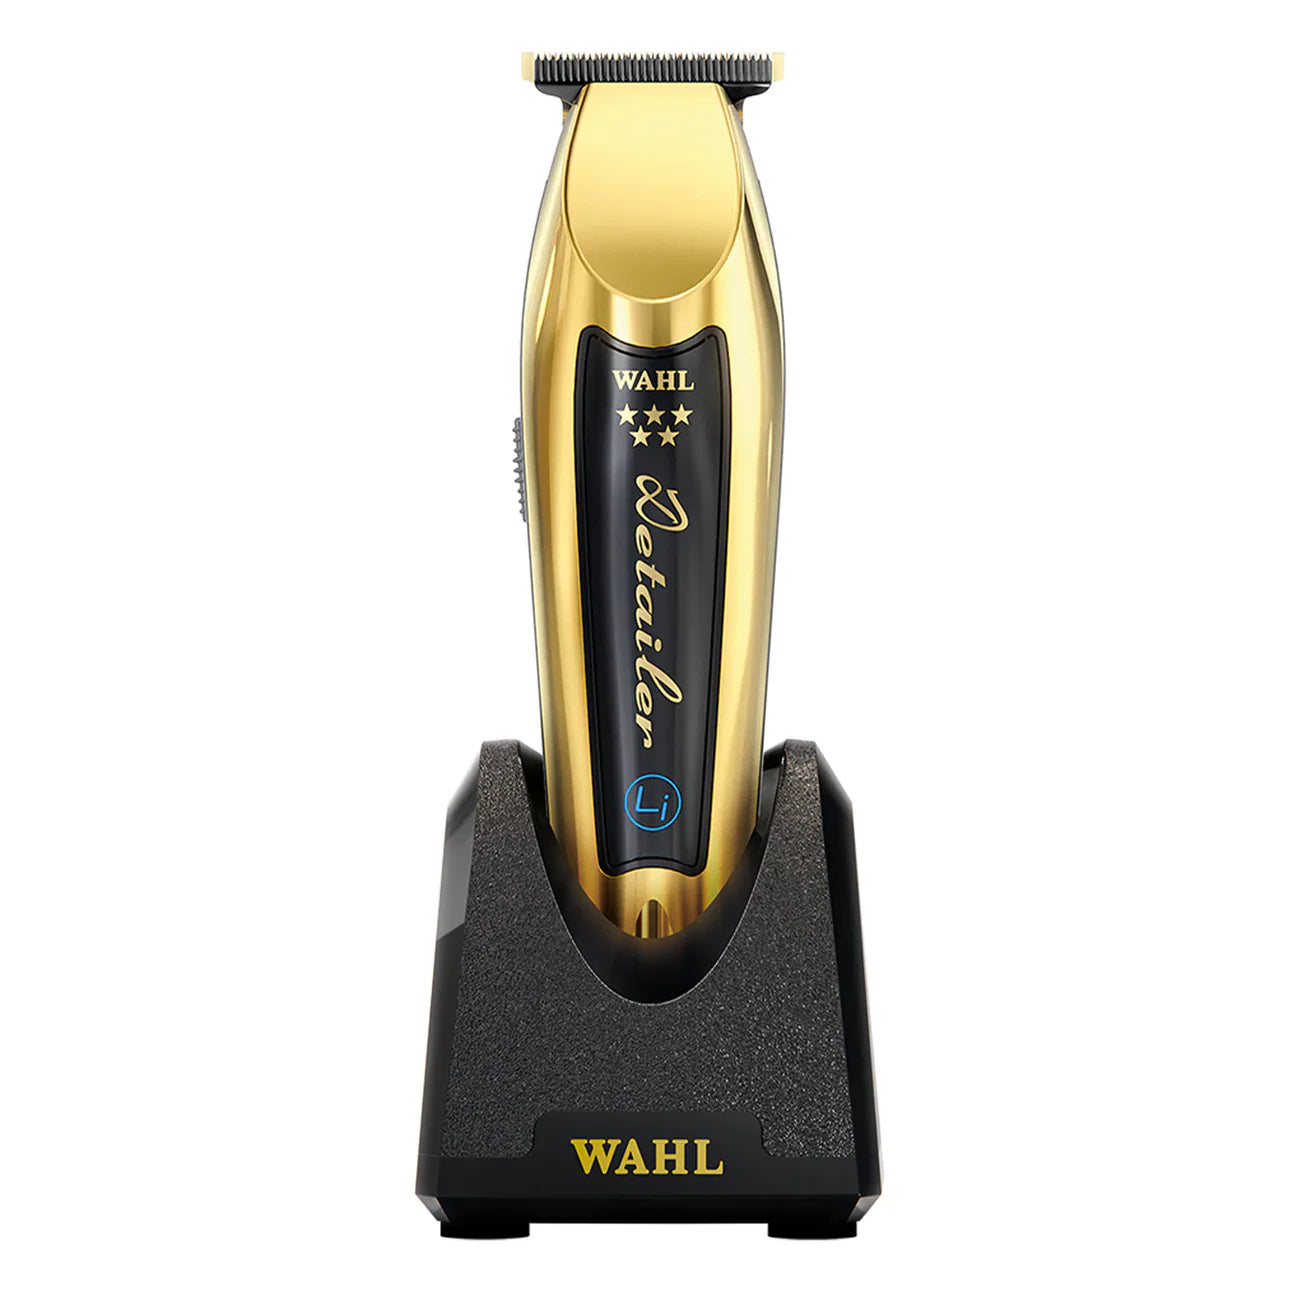 WAHL Gold Detailer Li 3023835 Trimmer